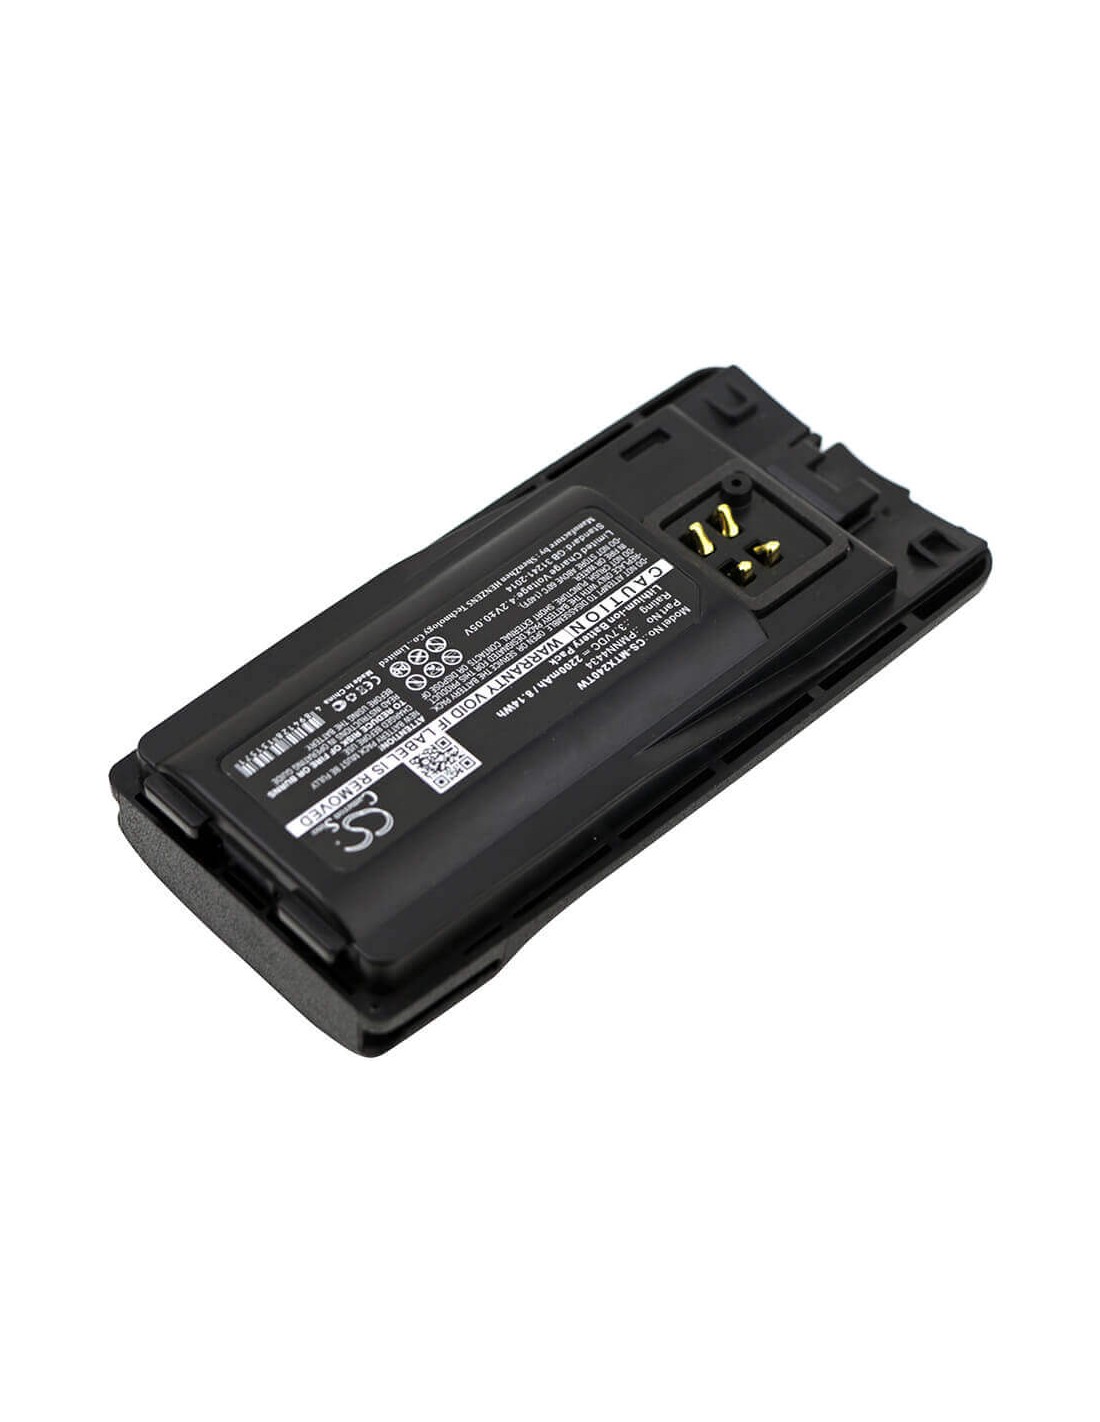 Battery for Motorola, Rmm2050, Rmu2040, Rmu2080, Rmu2080d, Rmv2080 7.4V, 2200mAh - 16.28Wh